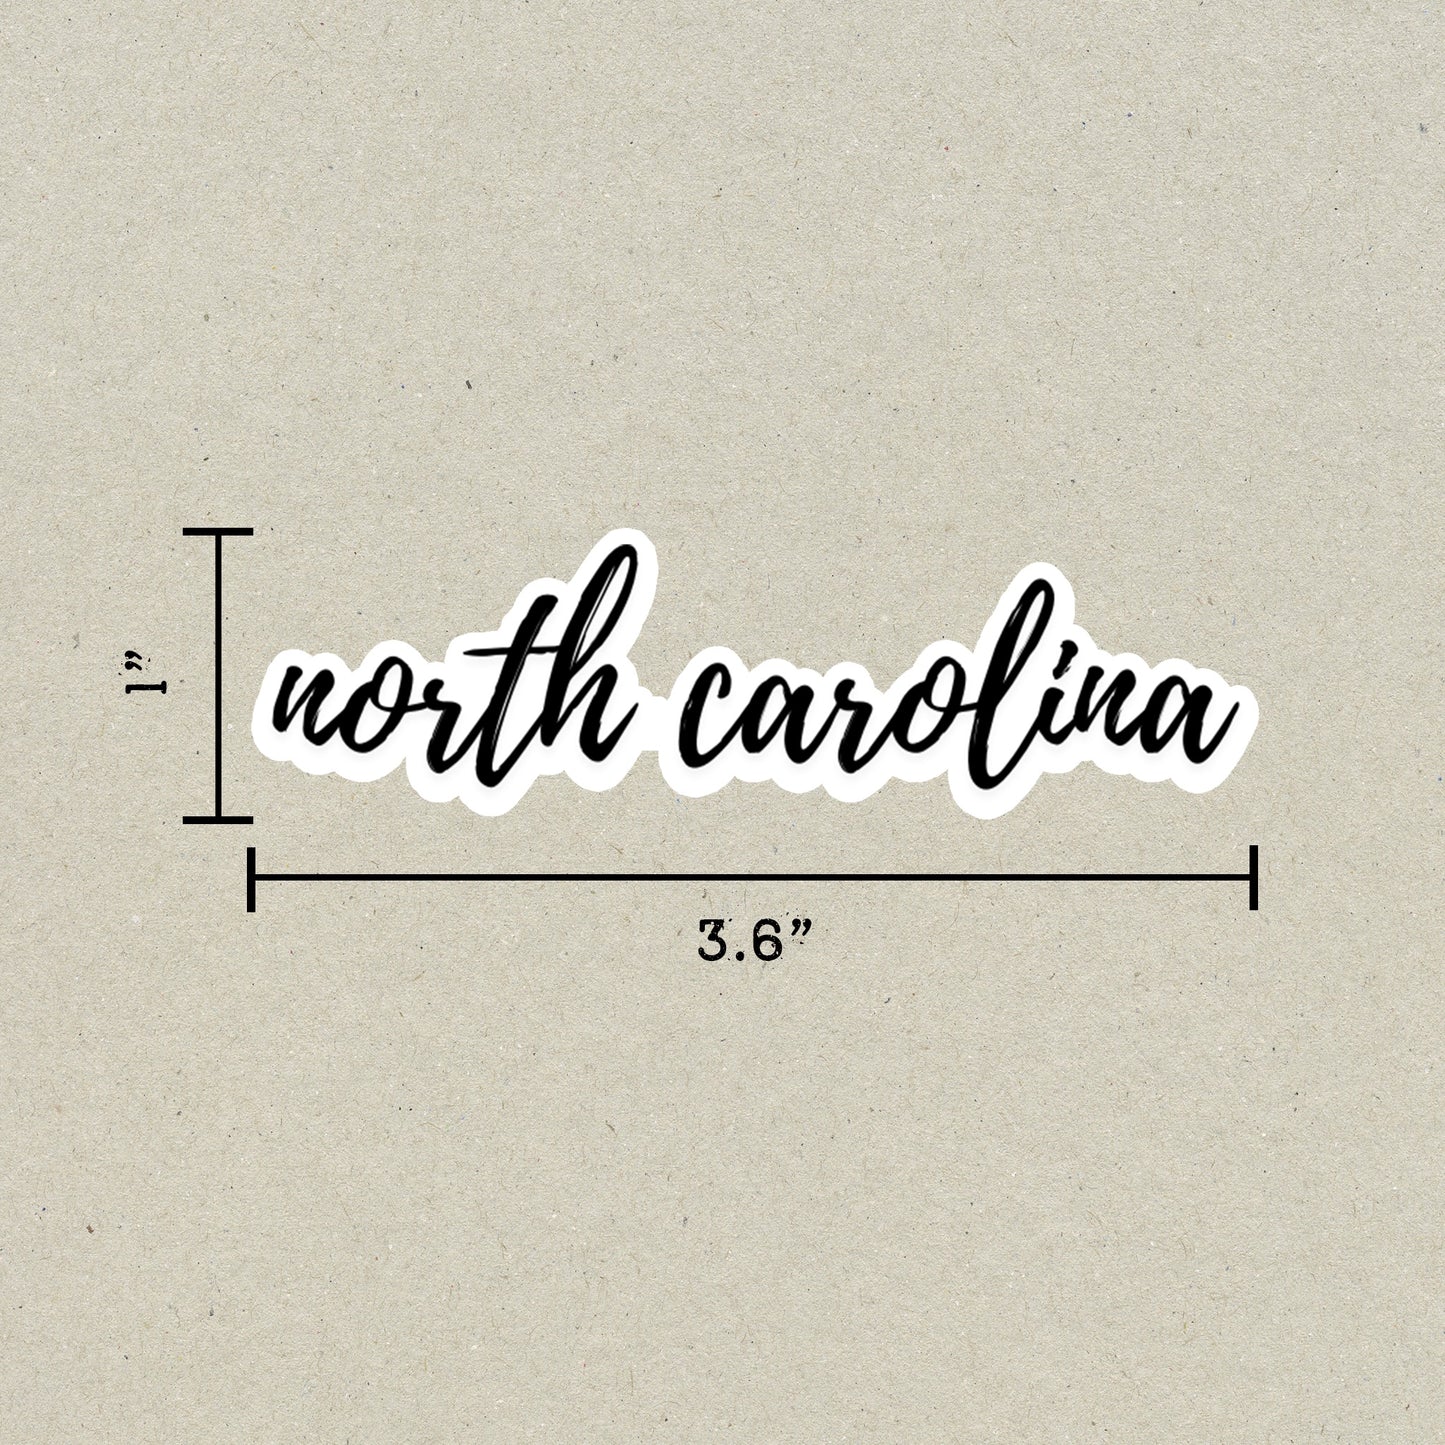 North Carolina Cursive Sticker